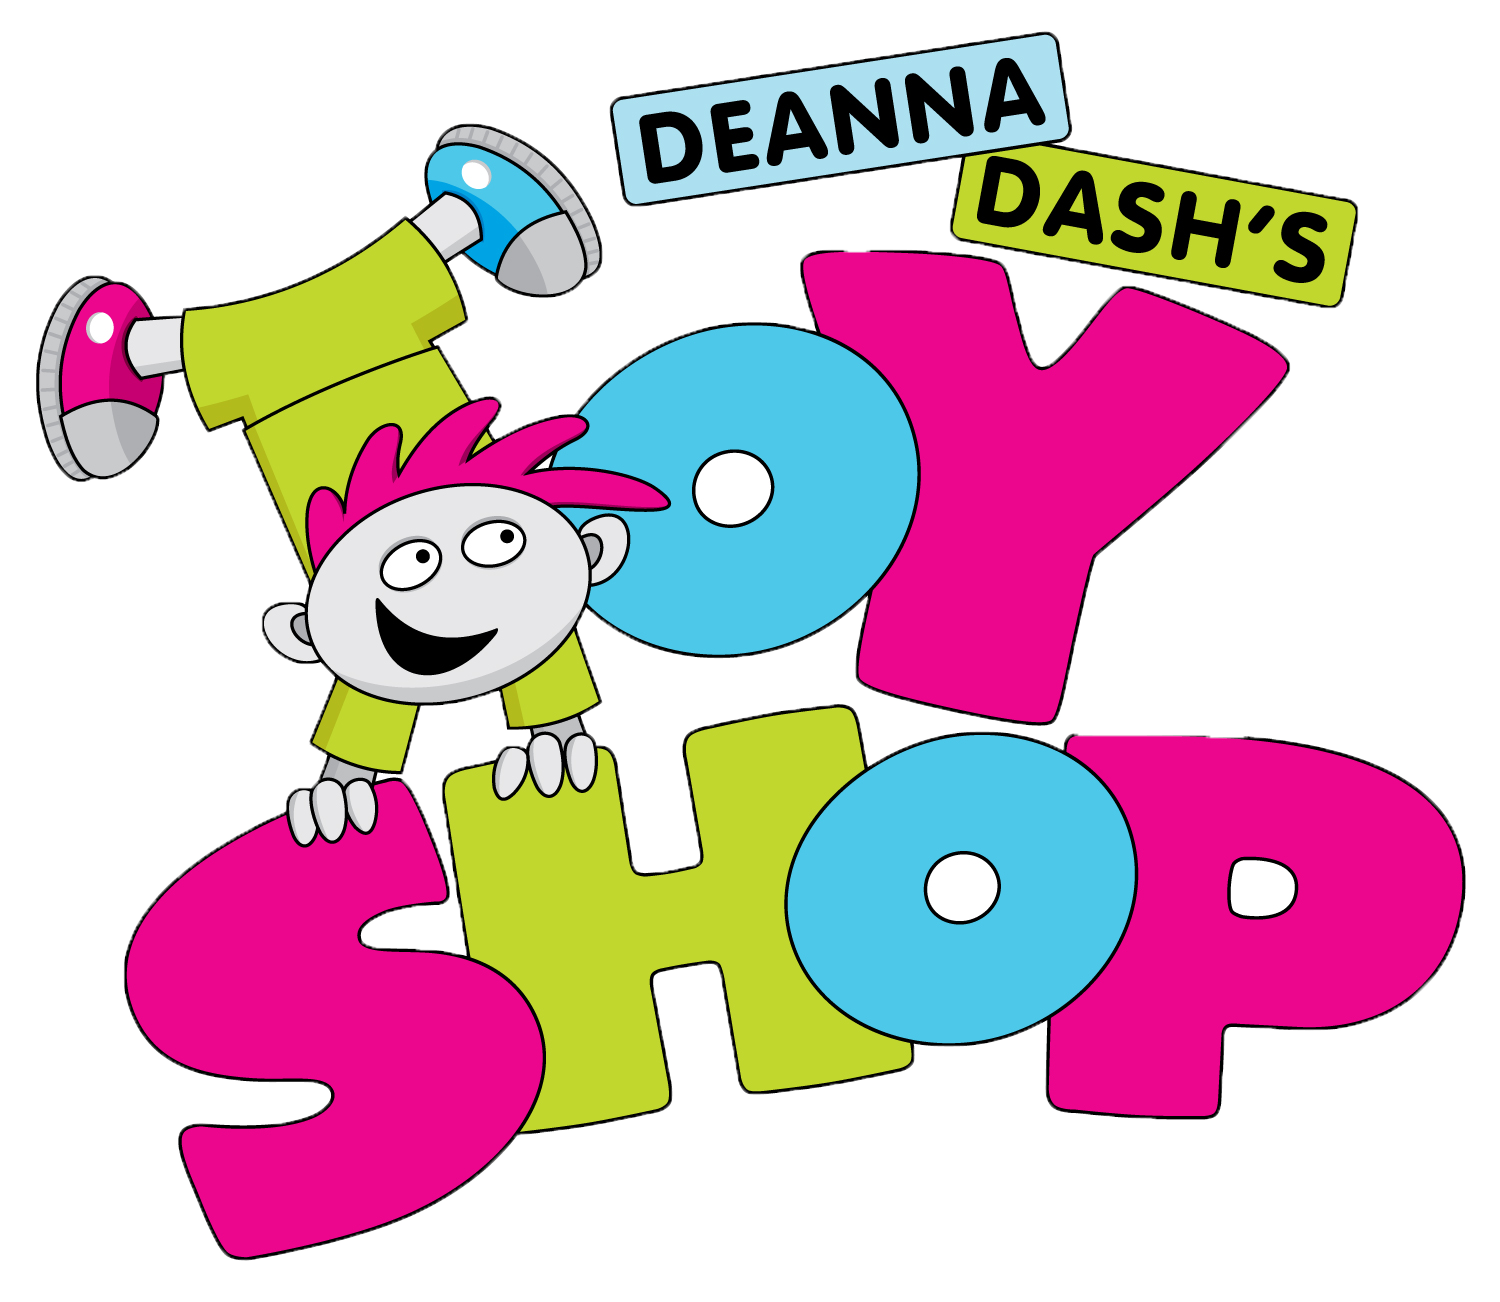 Deanna Dash's Toy Shop